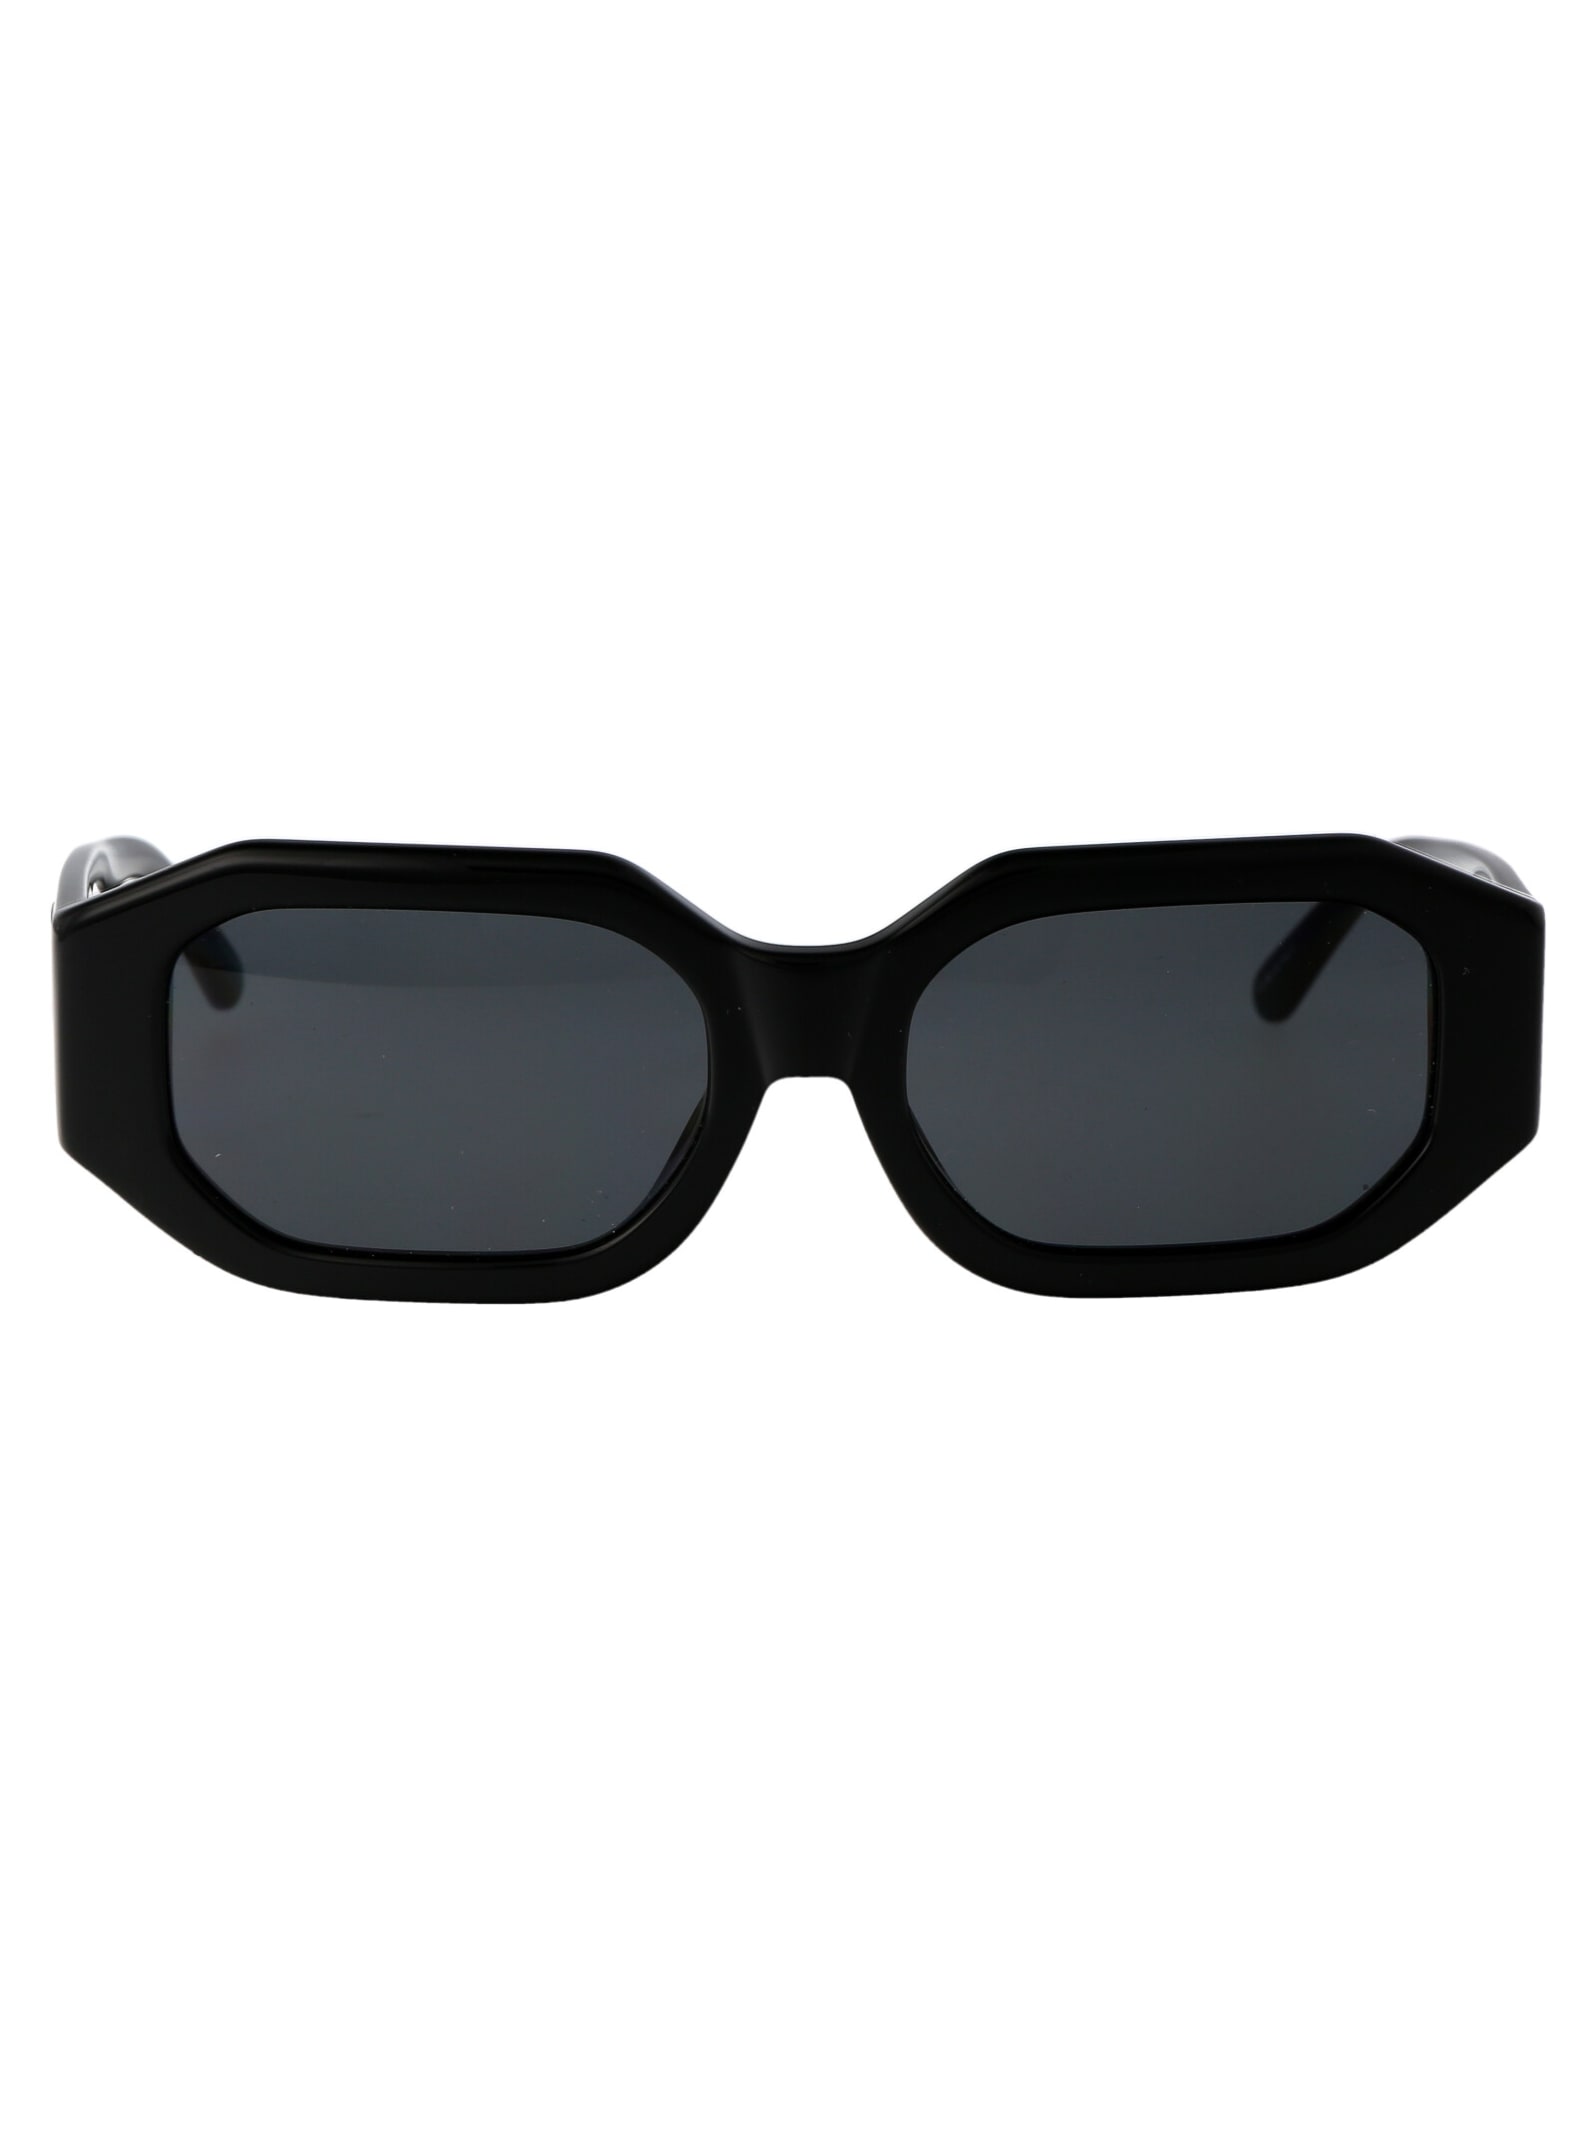 Shop Attico Blake Sunglasses In Black/silver/grey